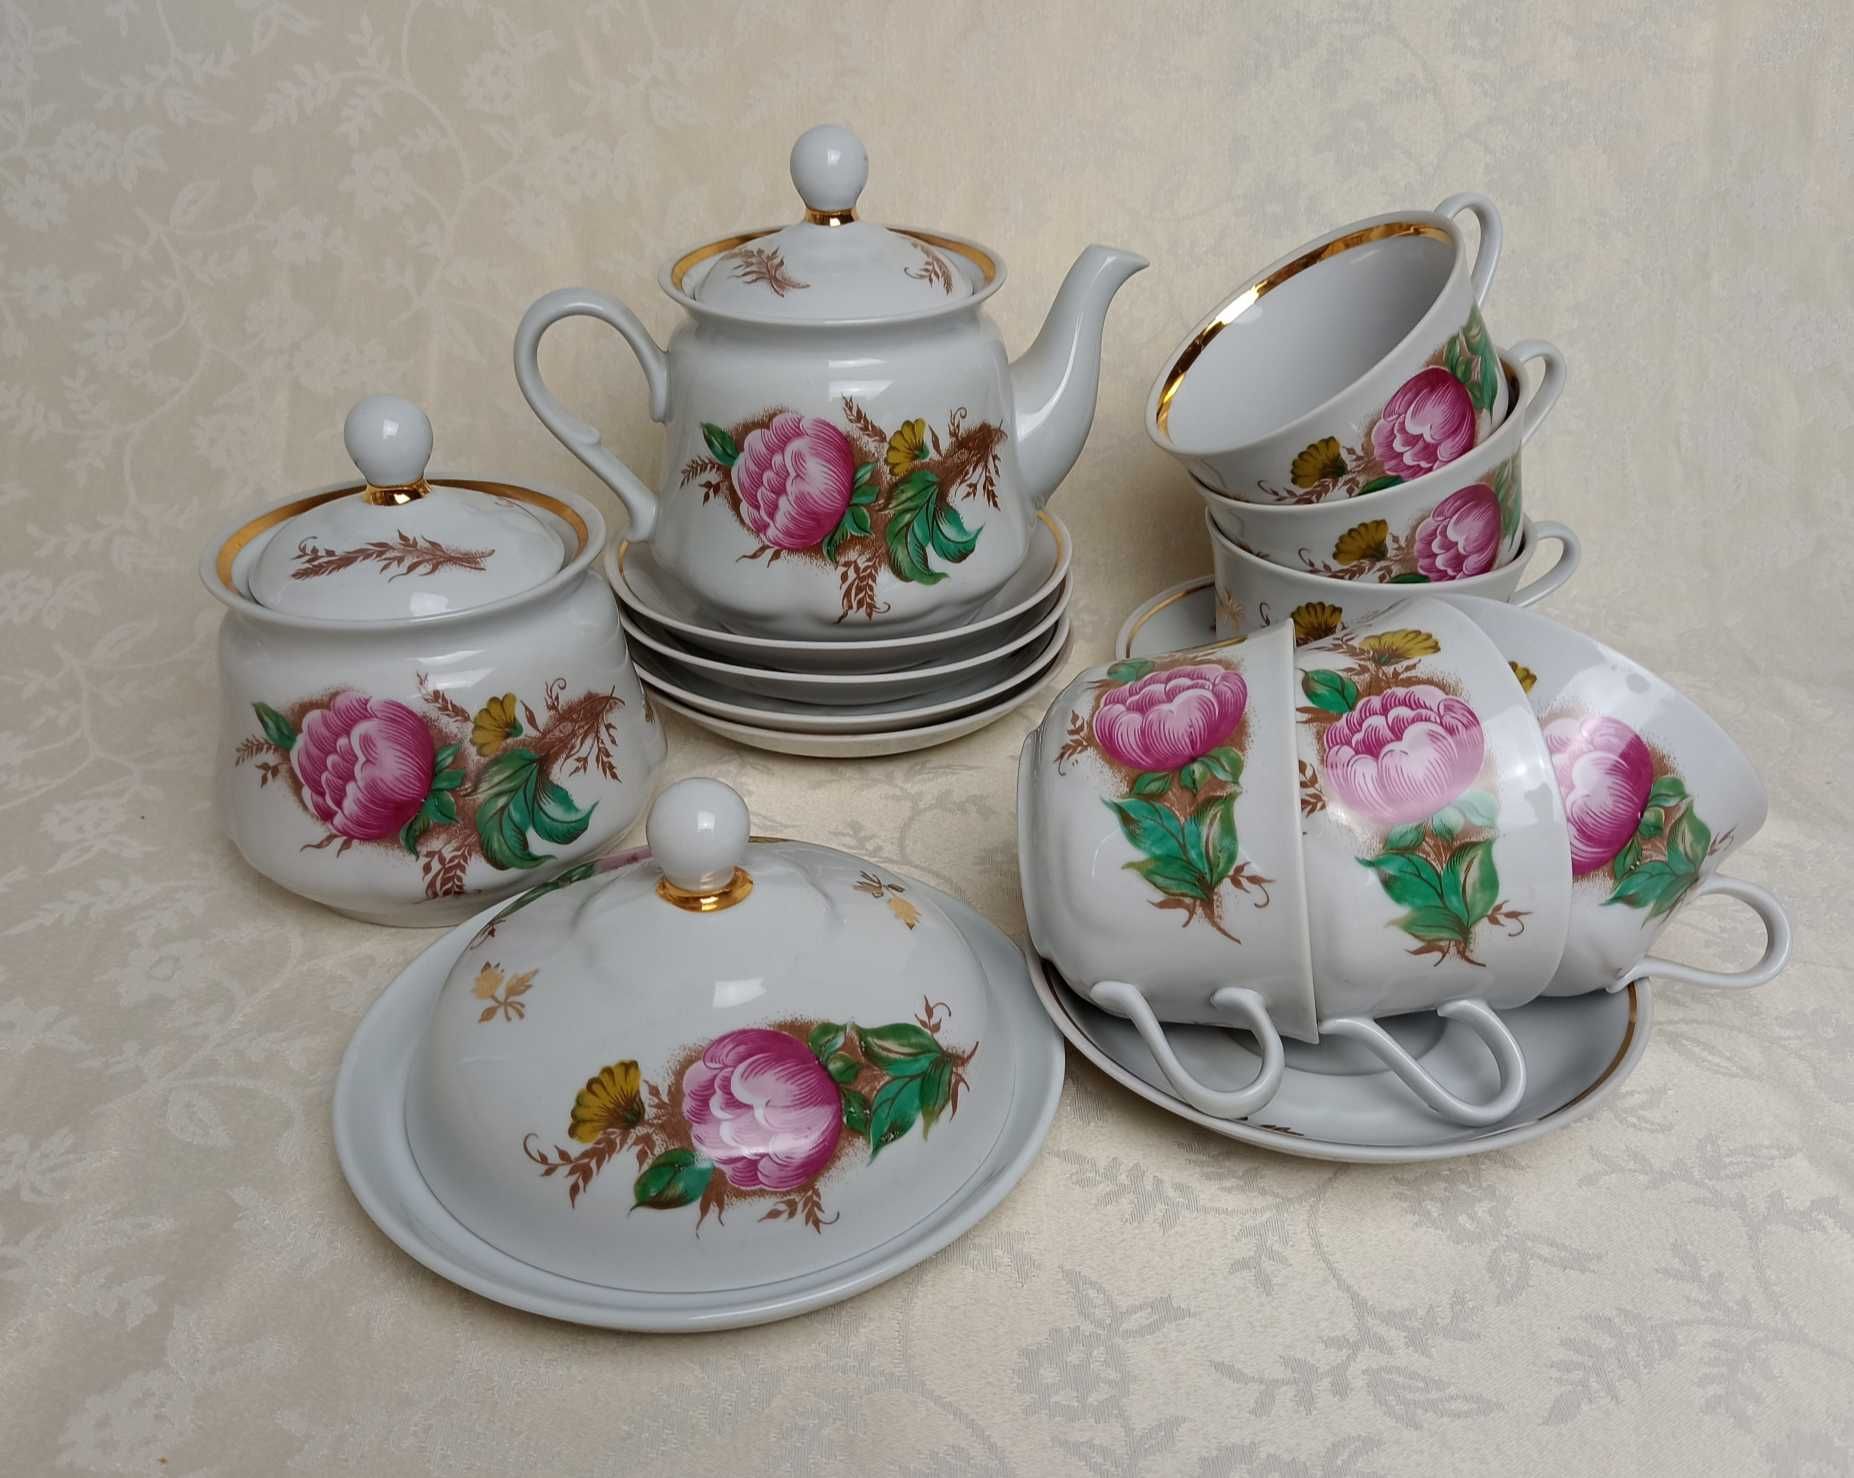 NOWY Porcelanowy SERWIS do herbaty na 6 osób Porcelana ZSRR.Sumy#517